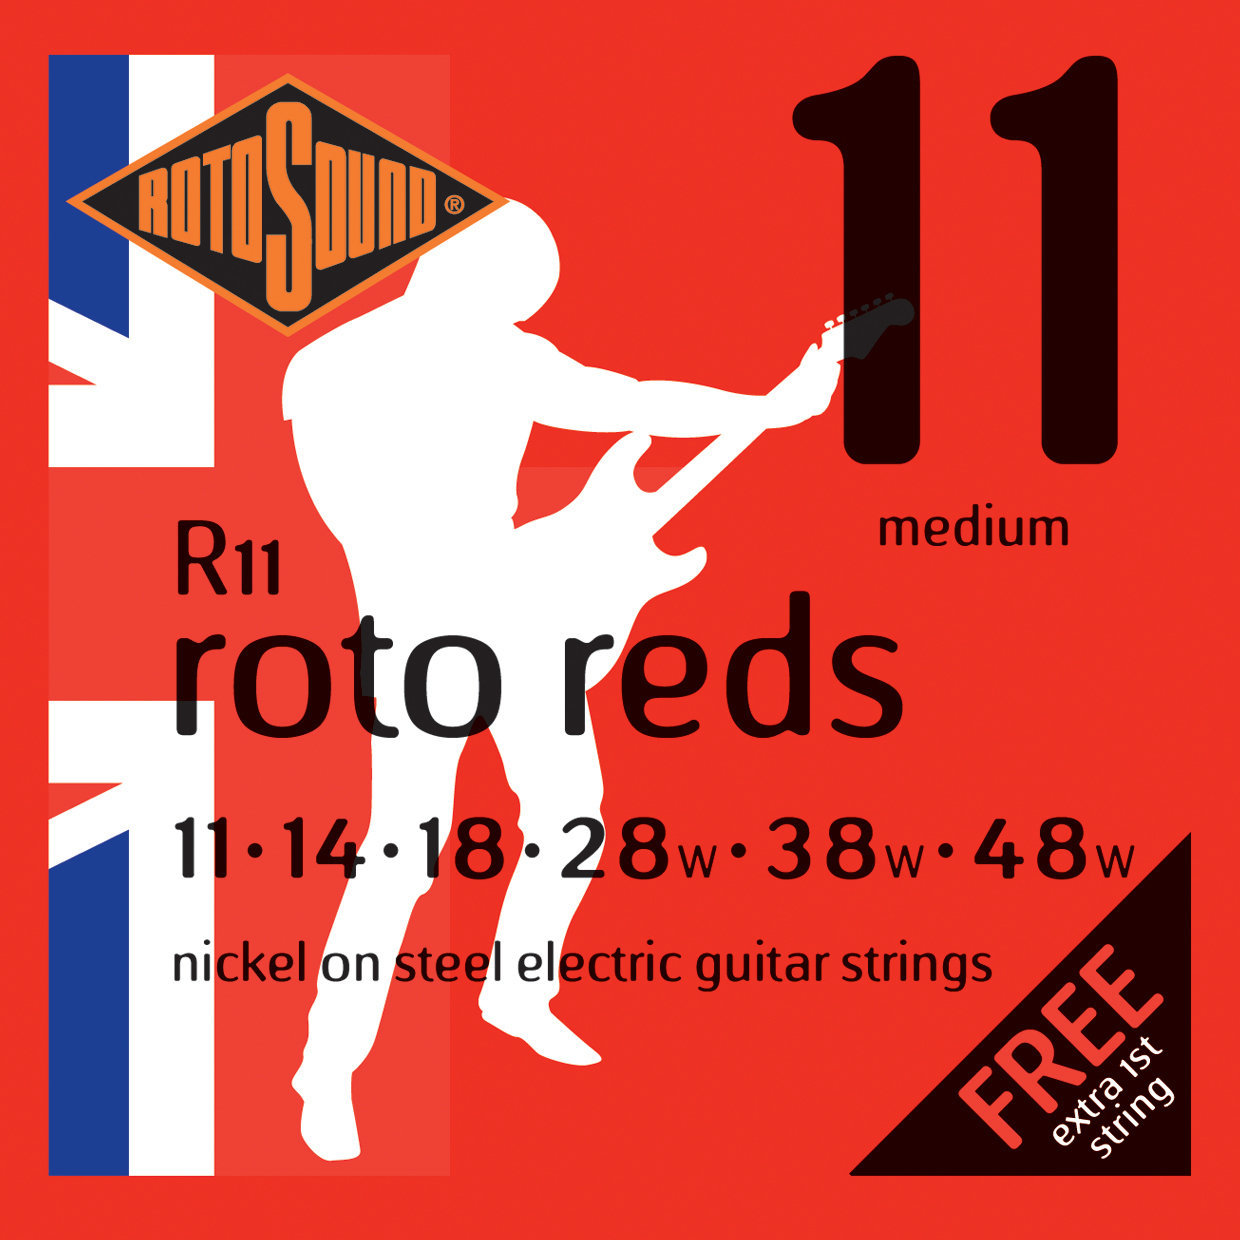 E-guitar strings Rotosound R11